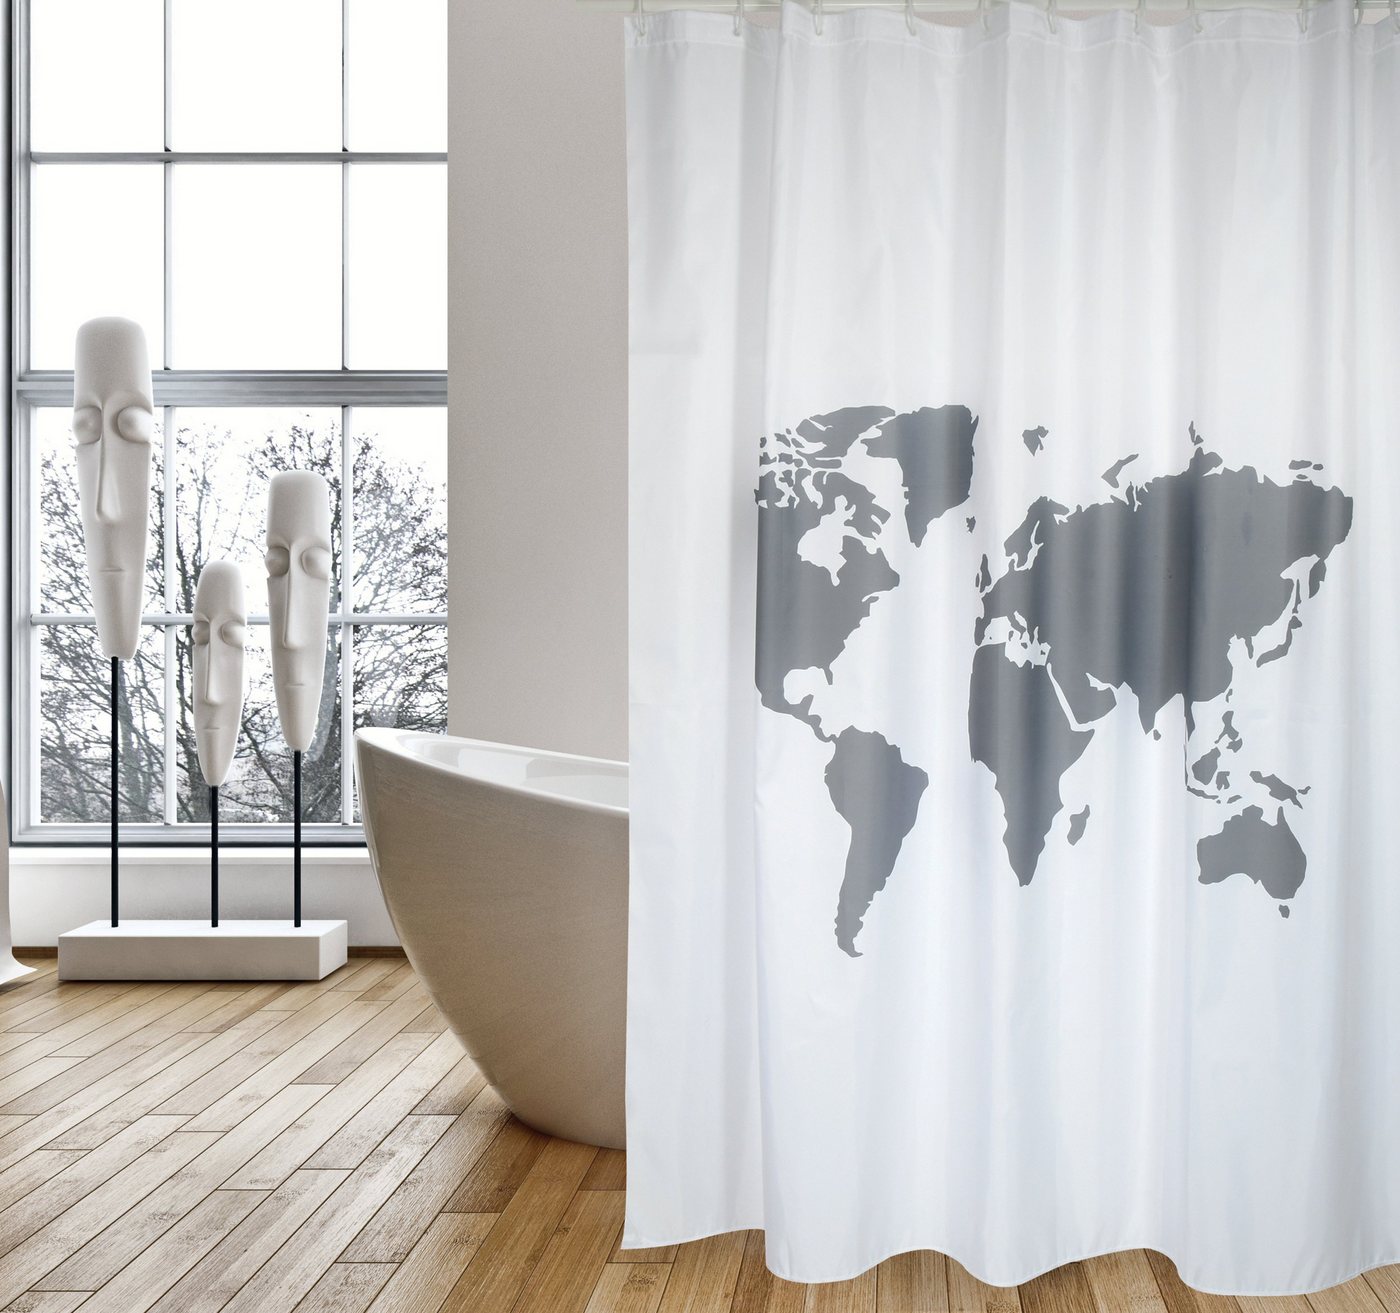 MSV Duschvorhang WORLD Breite 180 cm, Premium Anti-Schimmel Textil-Duschvorhang, Polyester, 180x200 cm, waschbar, weiß-grau, Motiv "World" von MSV